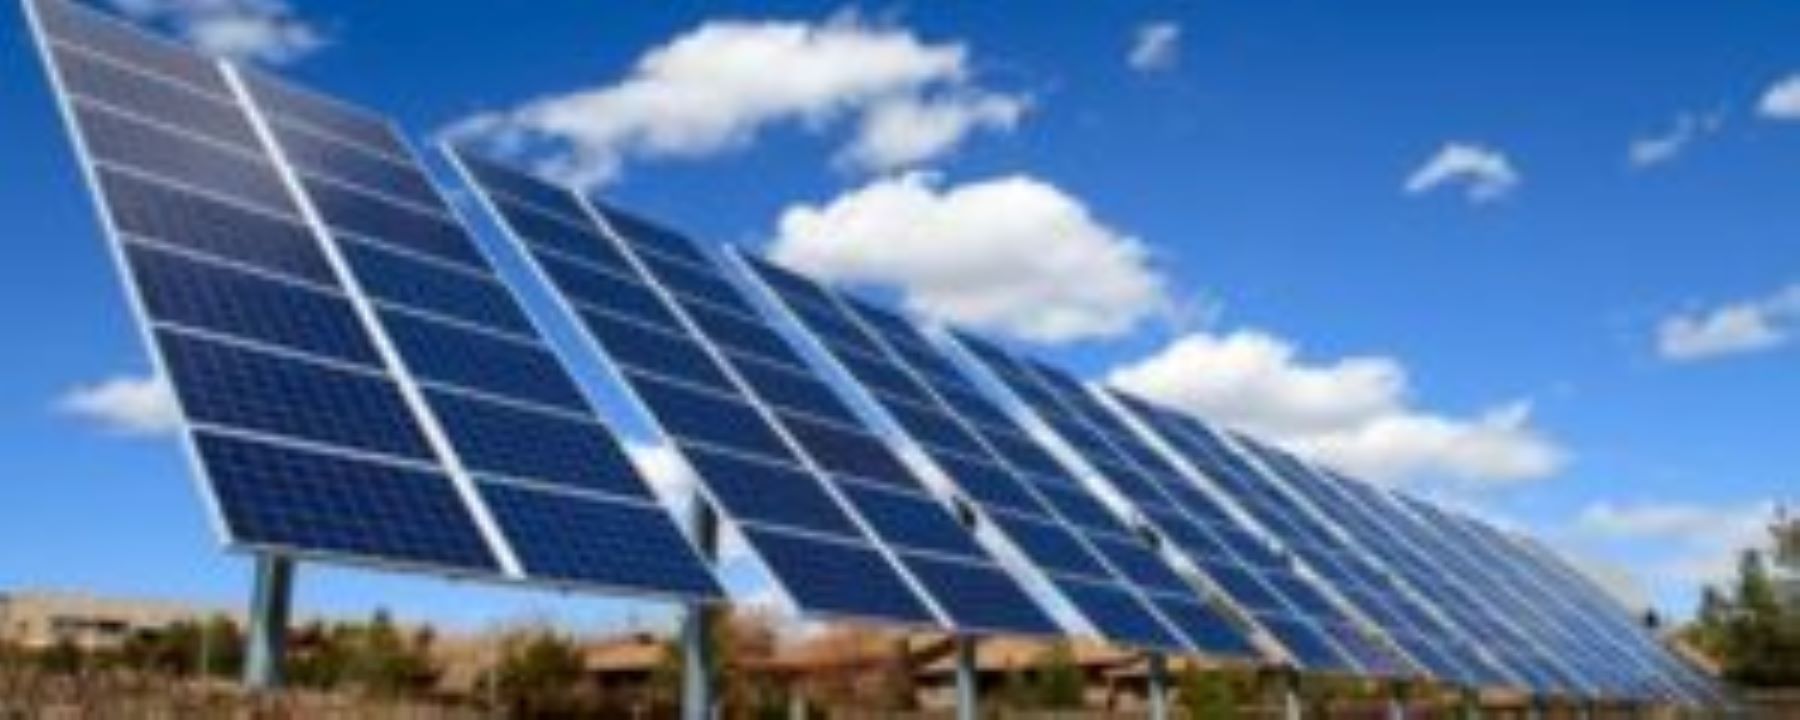 Καβάλα: Ερώτηση στη Βουλή για τα φωτοβολταϊκά πάρκα στο Νευροκόπι και Λεκάνη